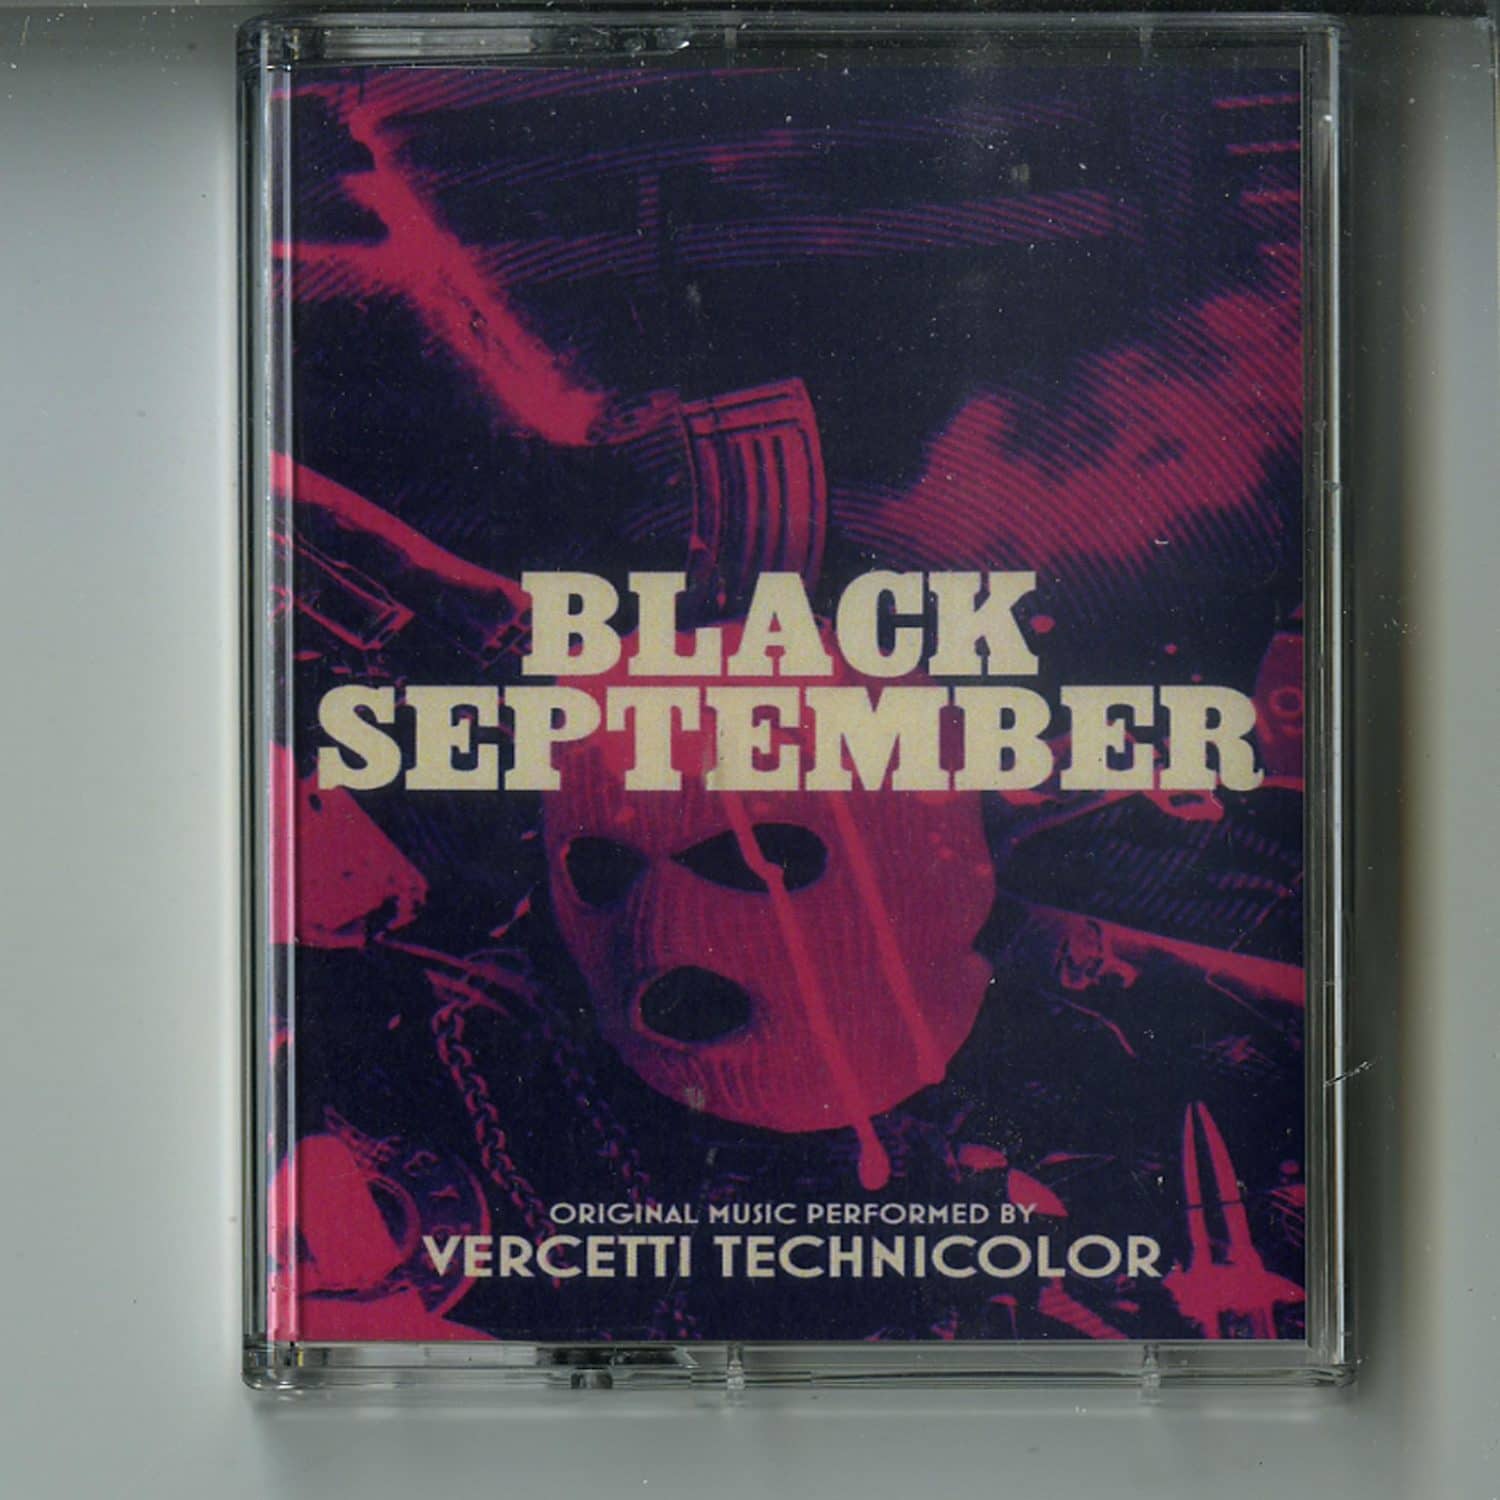 Vercetti Technicolor - BLACK SEPTEMBER 